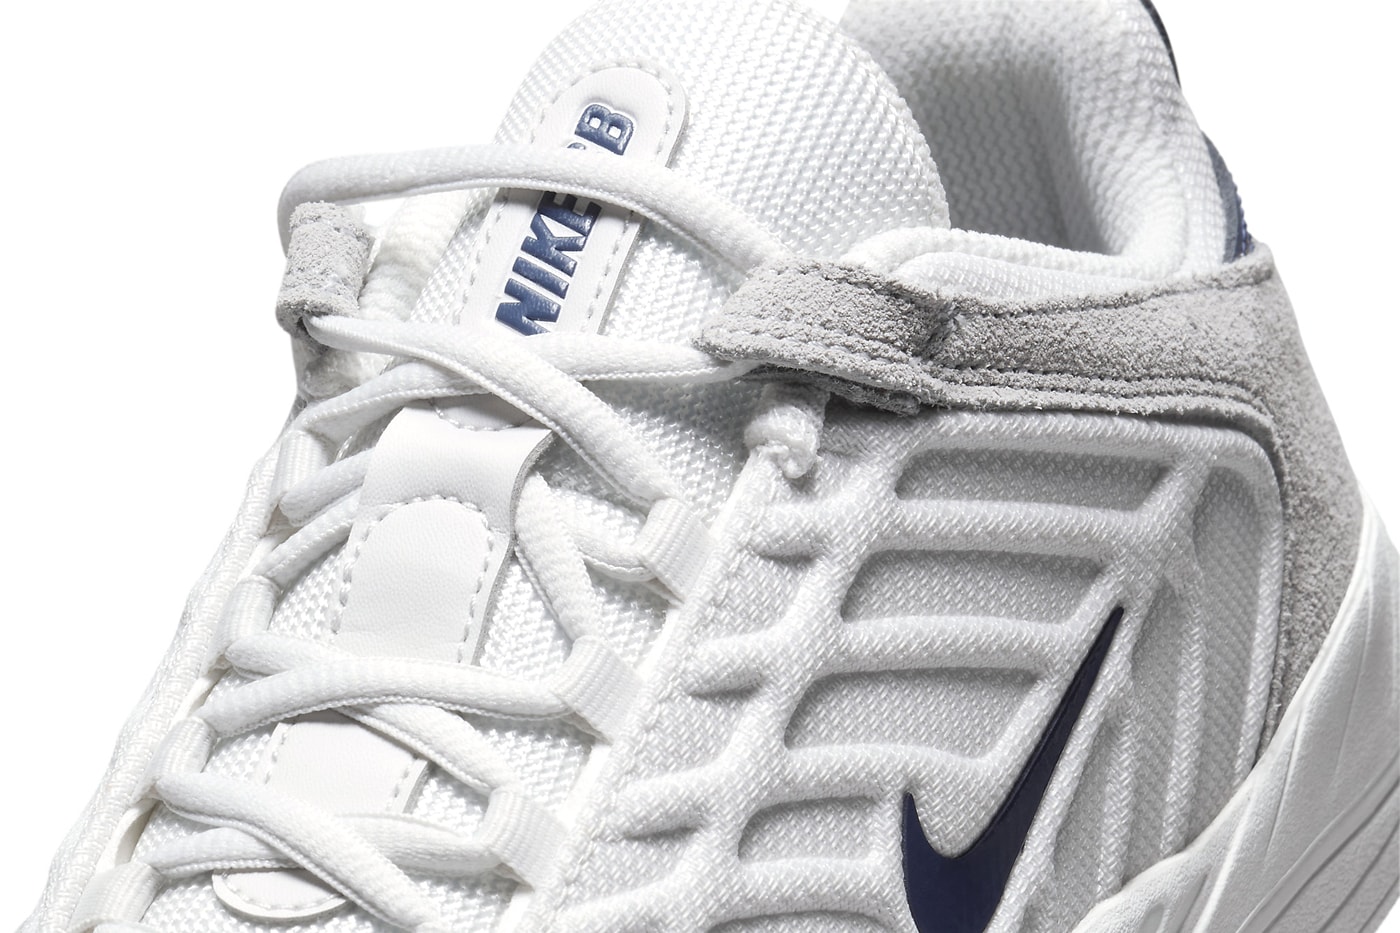 ナイキSBの新型モデル バータブレイに“ジョージタウン”が登場 Nike SB Vertebrae Surfaces in a Minimal "Georgetown" Colorway FD4691-002 Release all white grey suede mesh